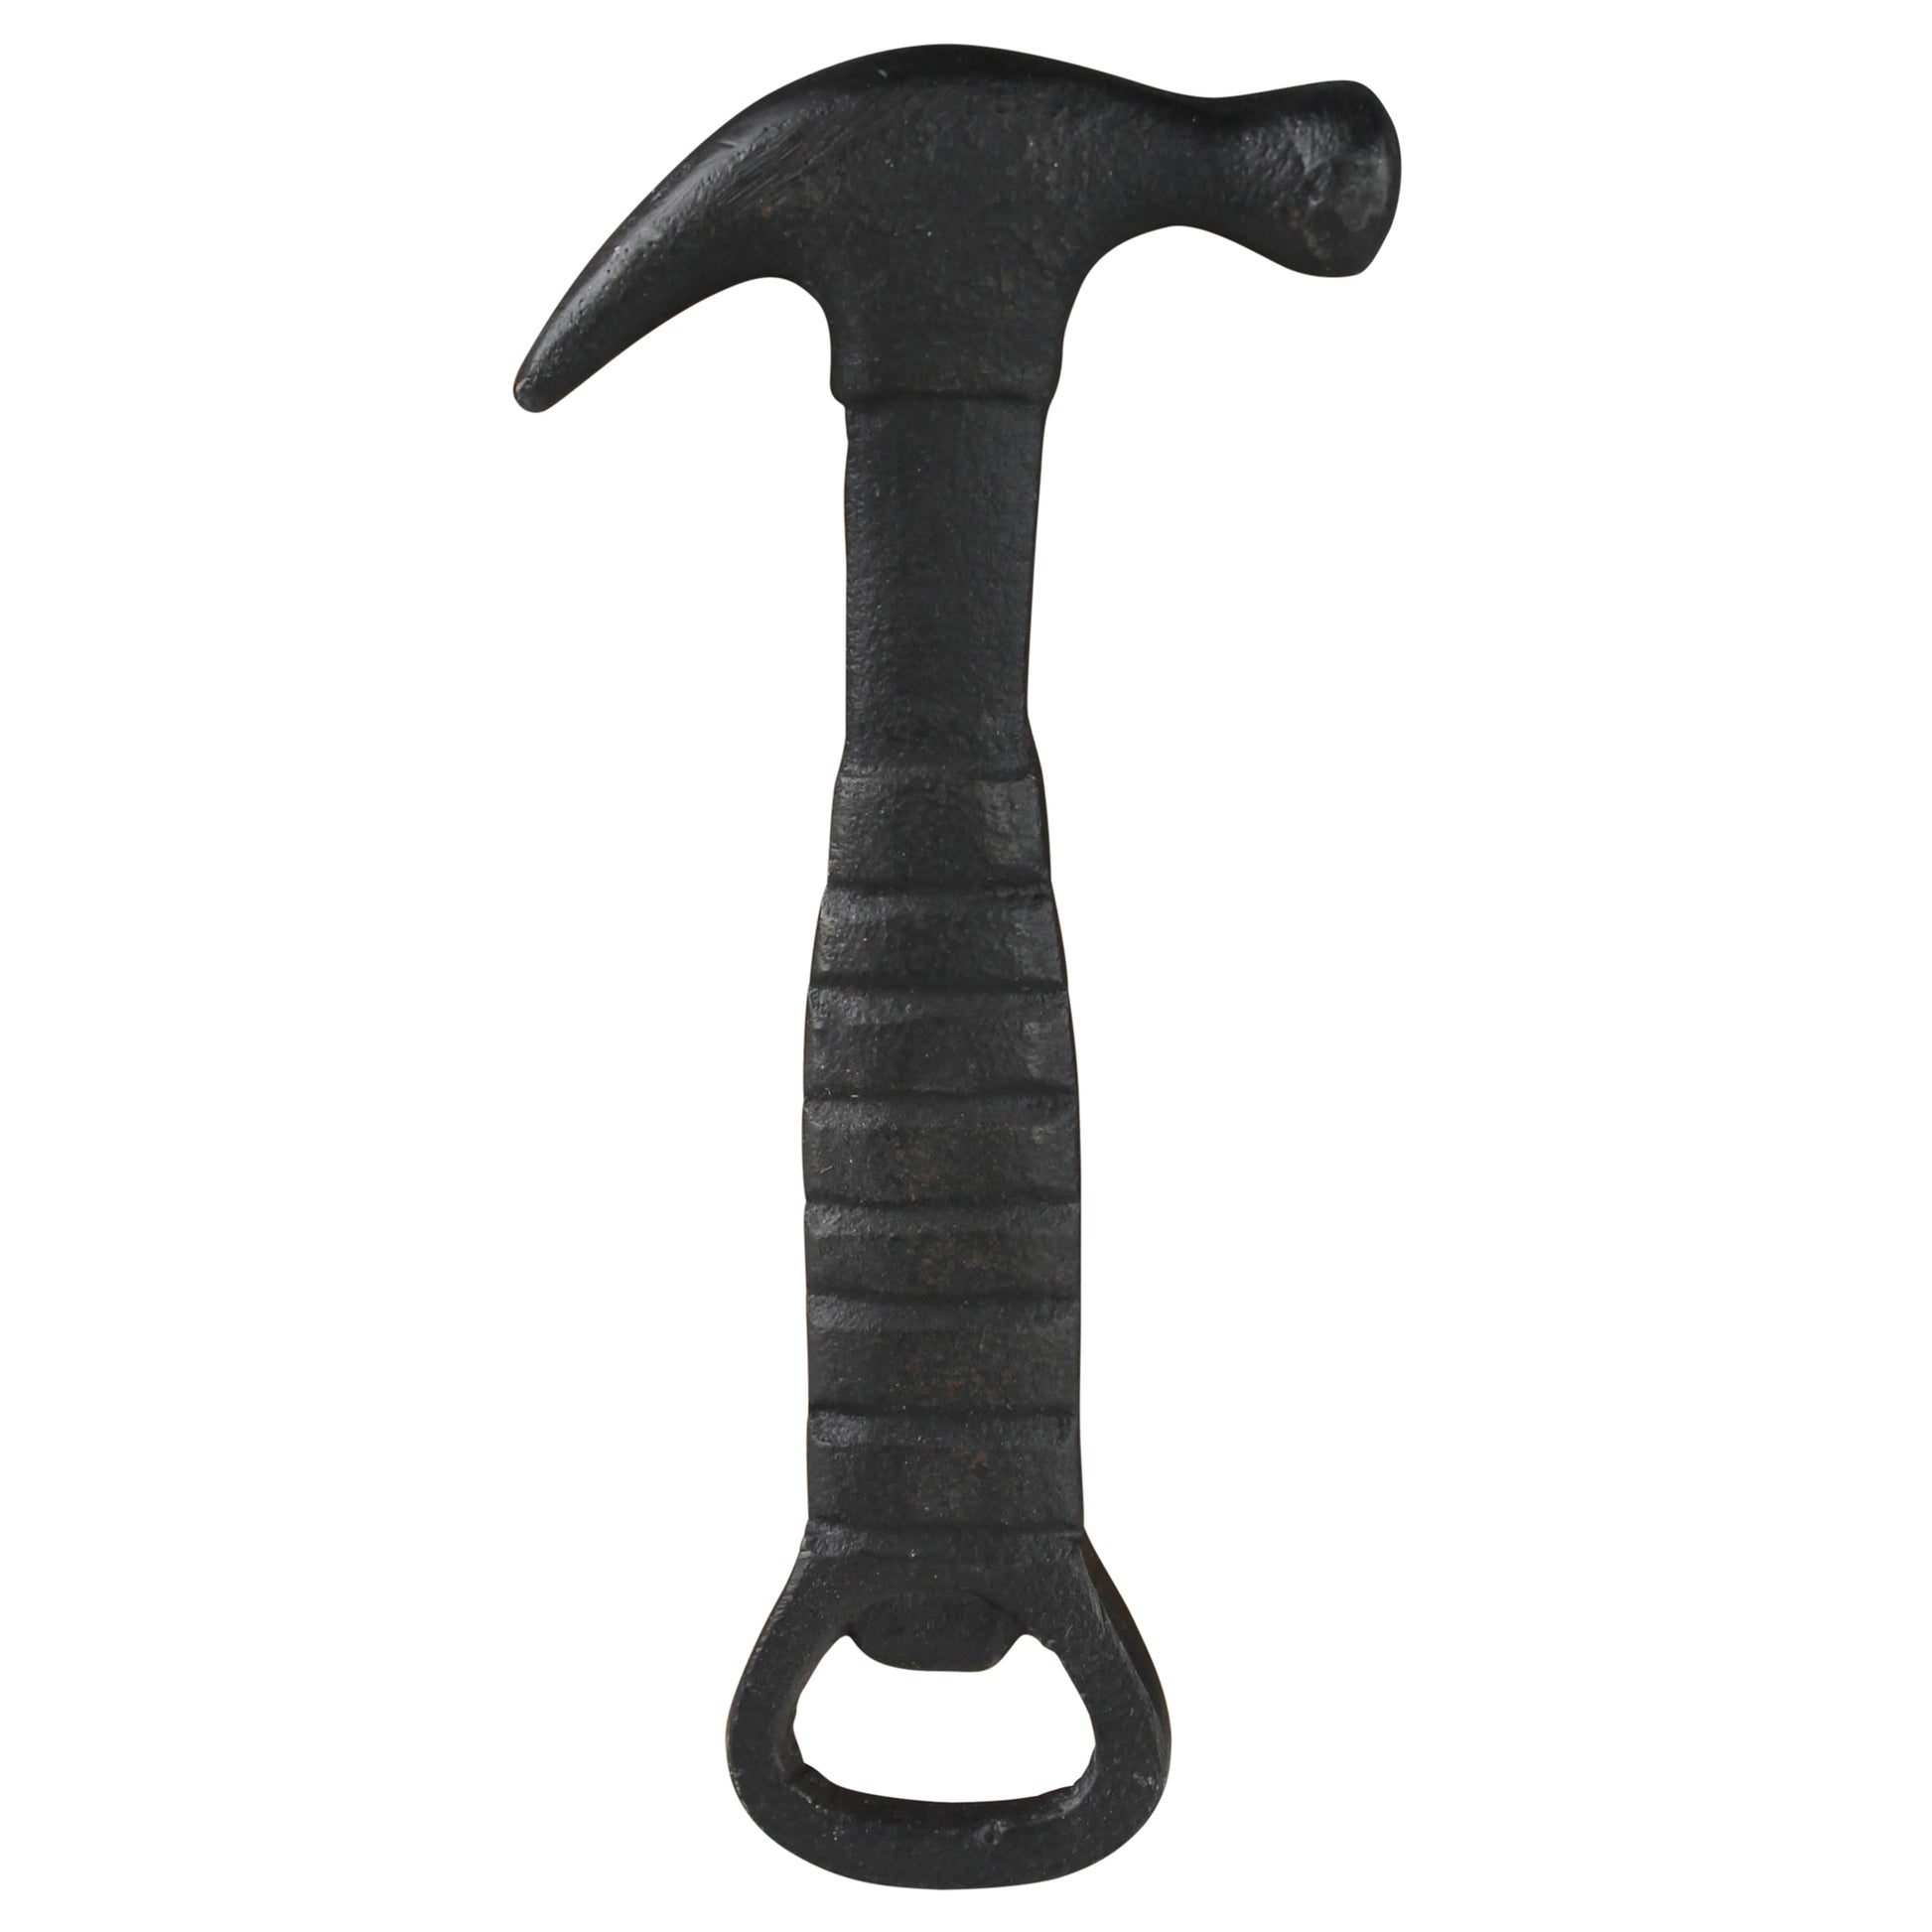 Image of a hammer shape bottle opener.